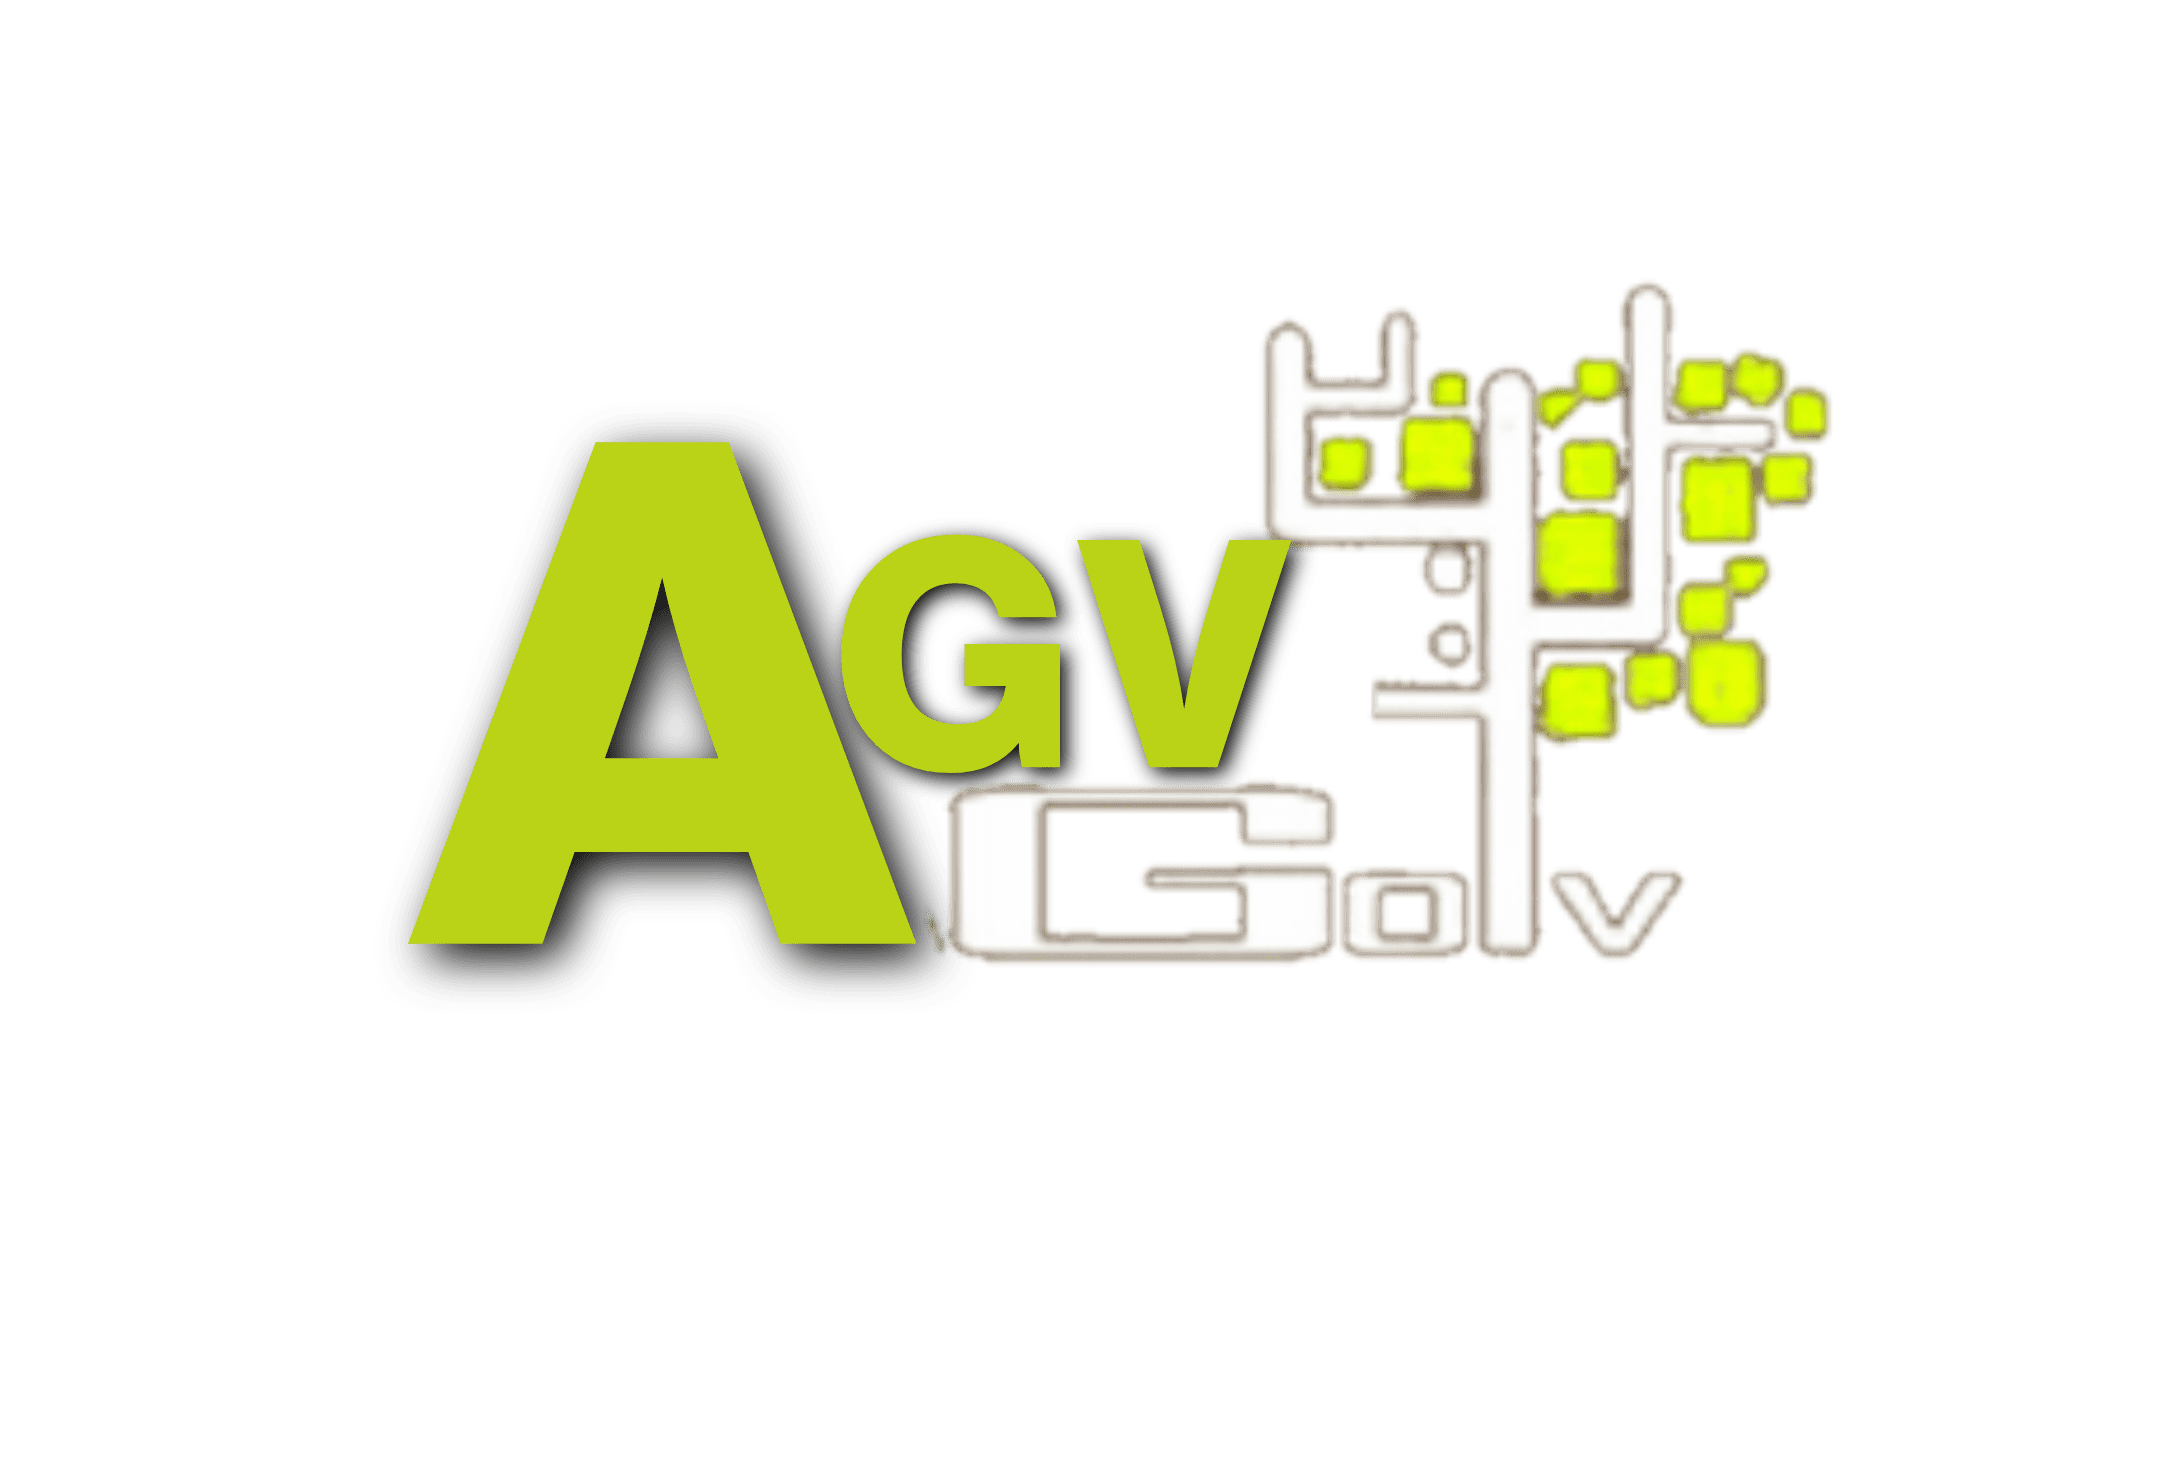 AGV Golv AB